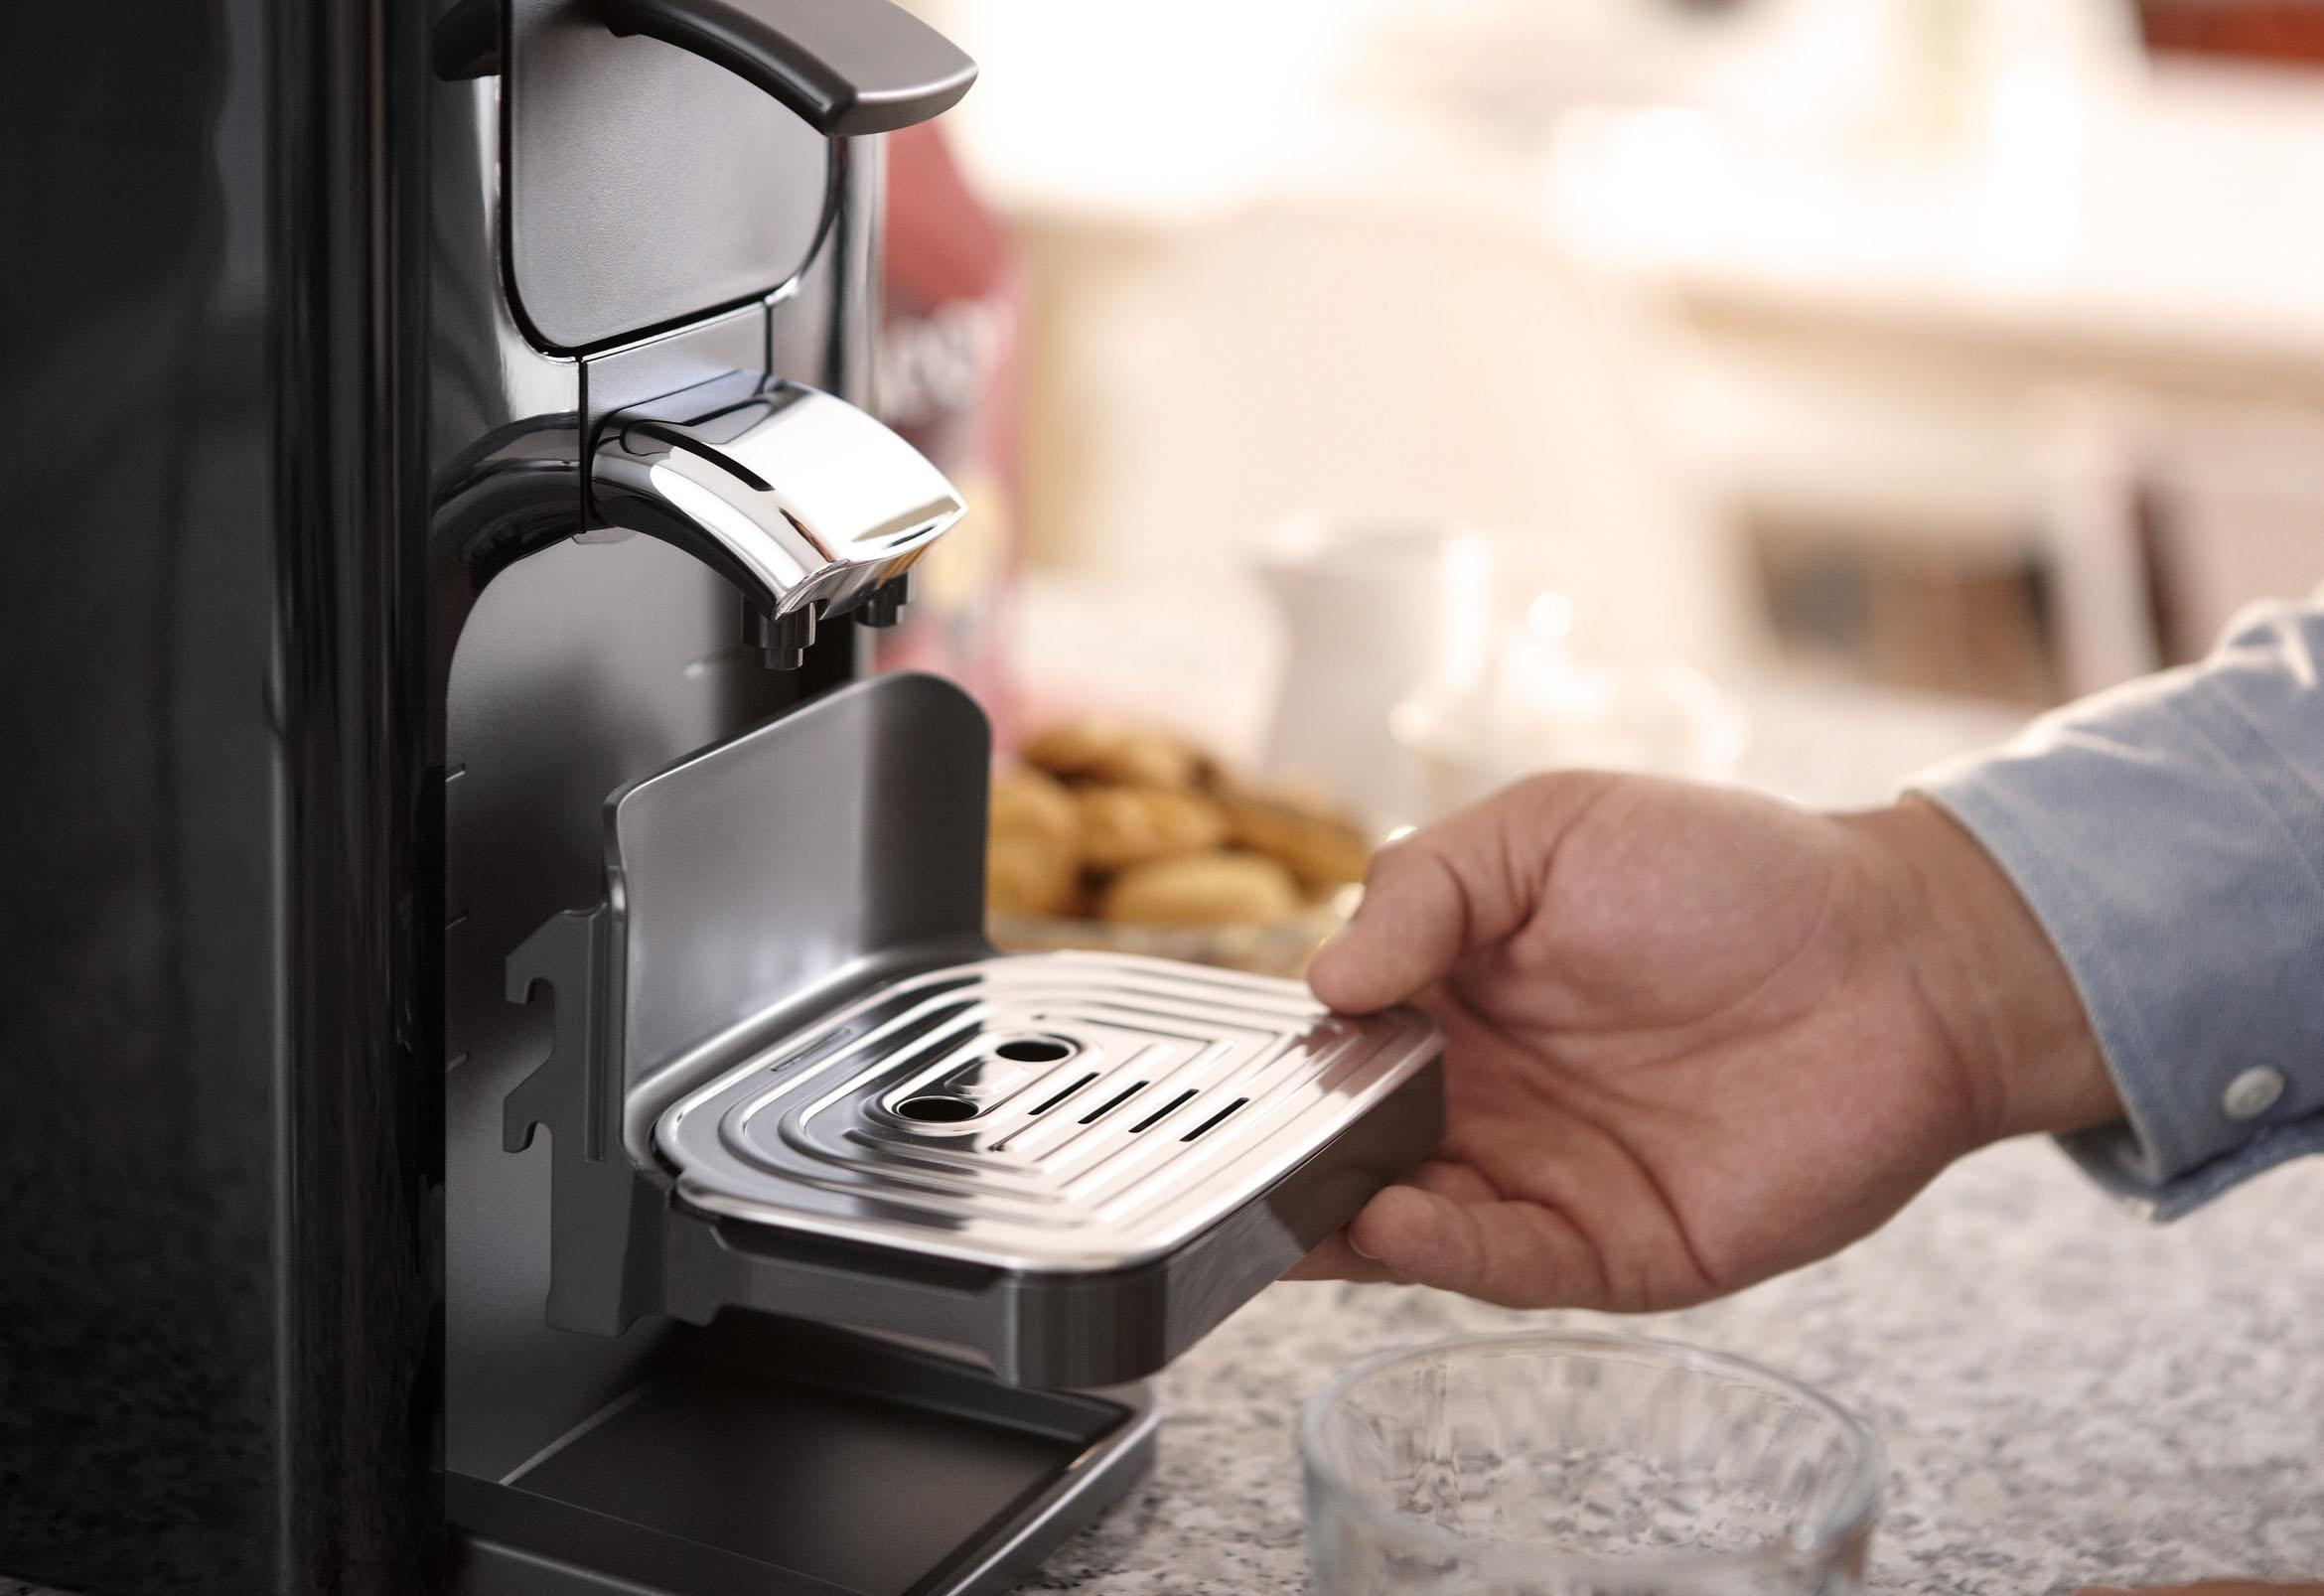 Philips Senseo Kaffeepadmaschine jetzt im Gratis Shop im Online Wert -Zugaben Quadrante »SENSEO® inkl. von UVP OTTO 23,90 HD7865/60«